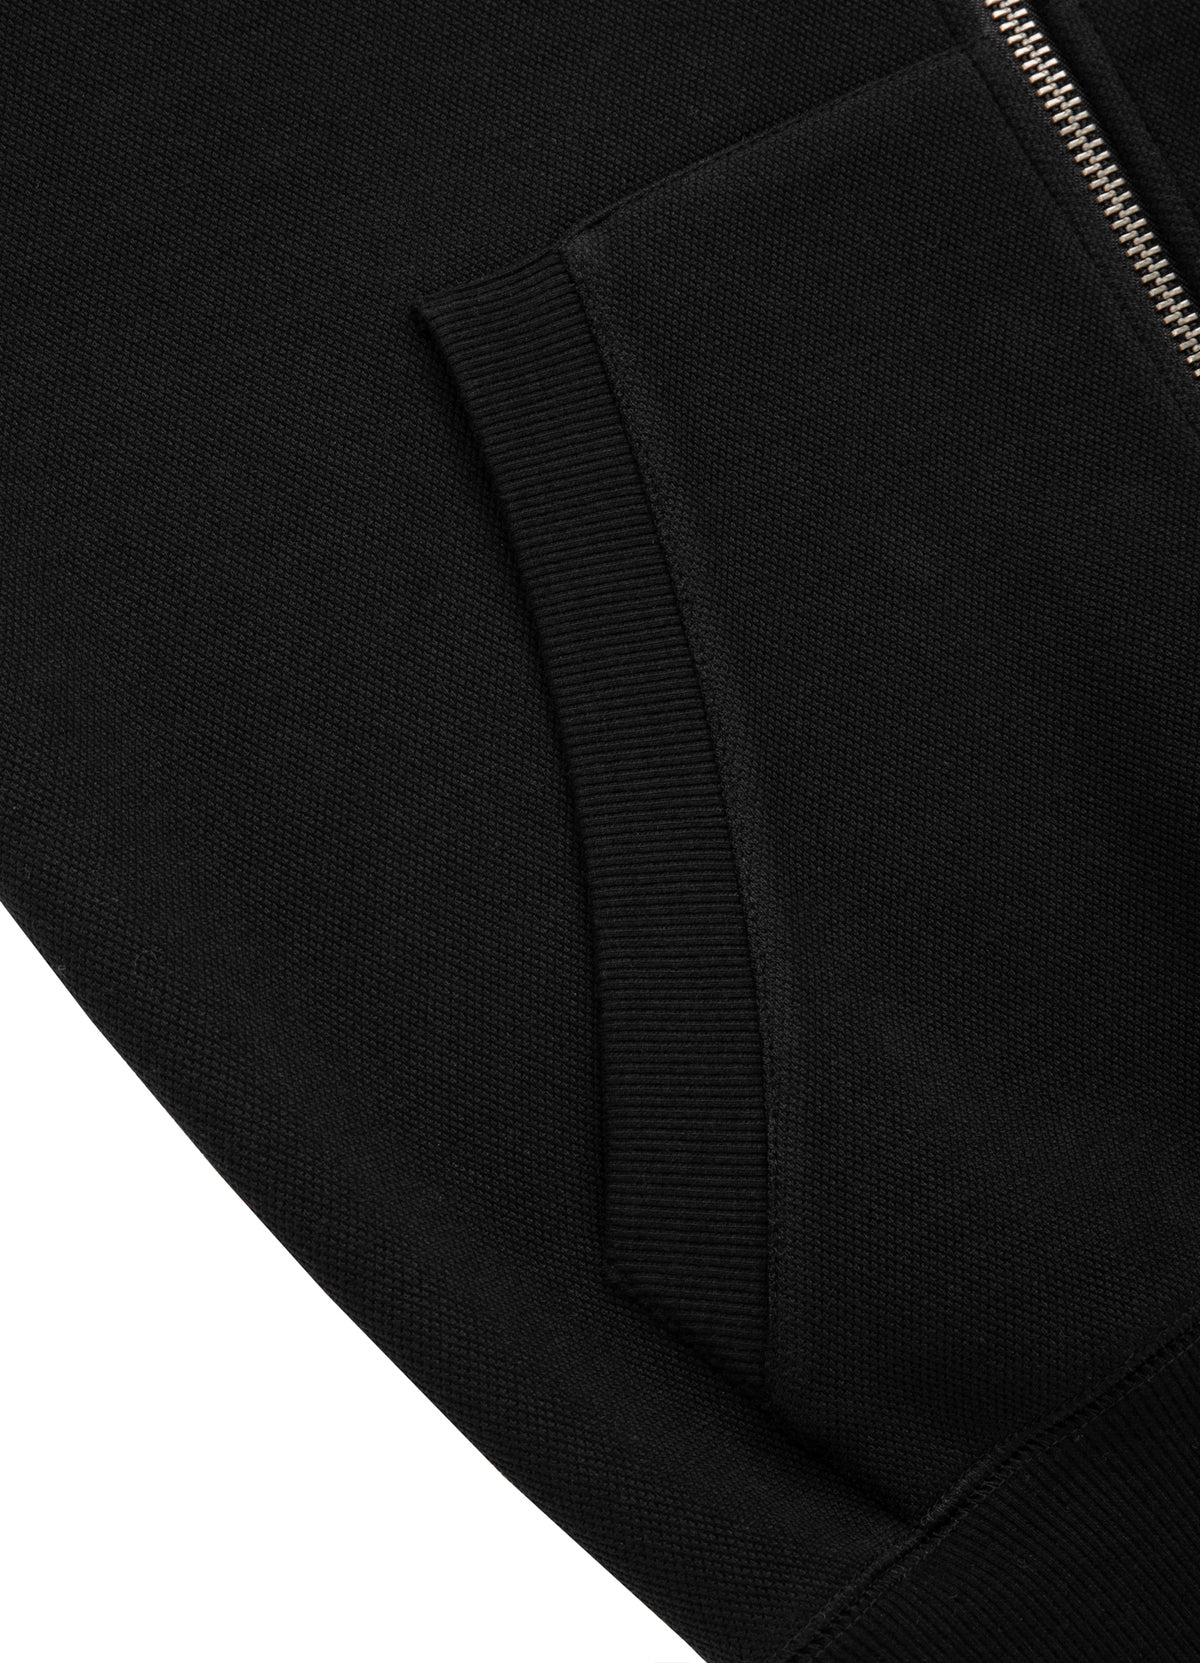 ADCC Premium Pique Black Sweatjacket.